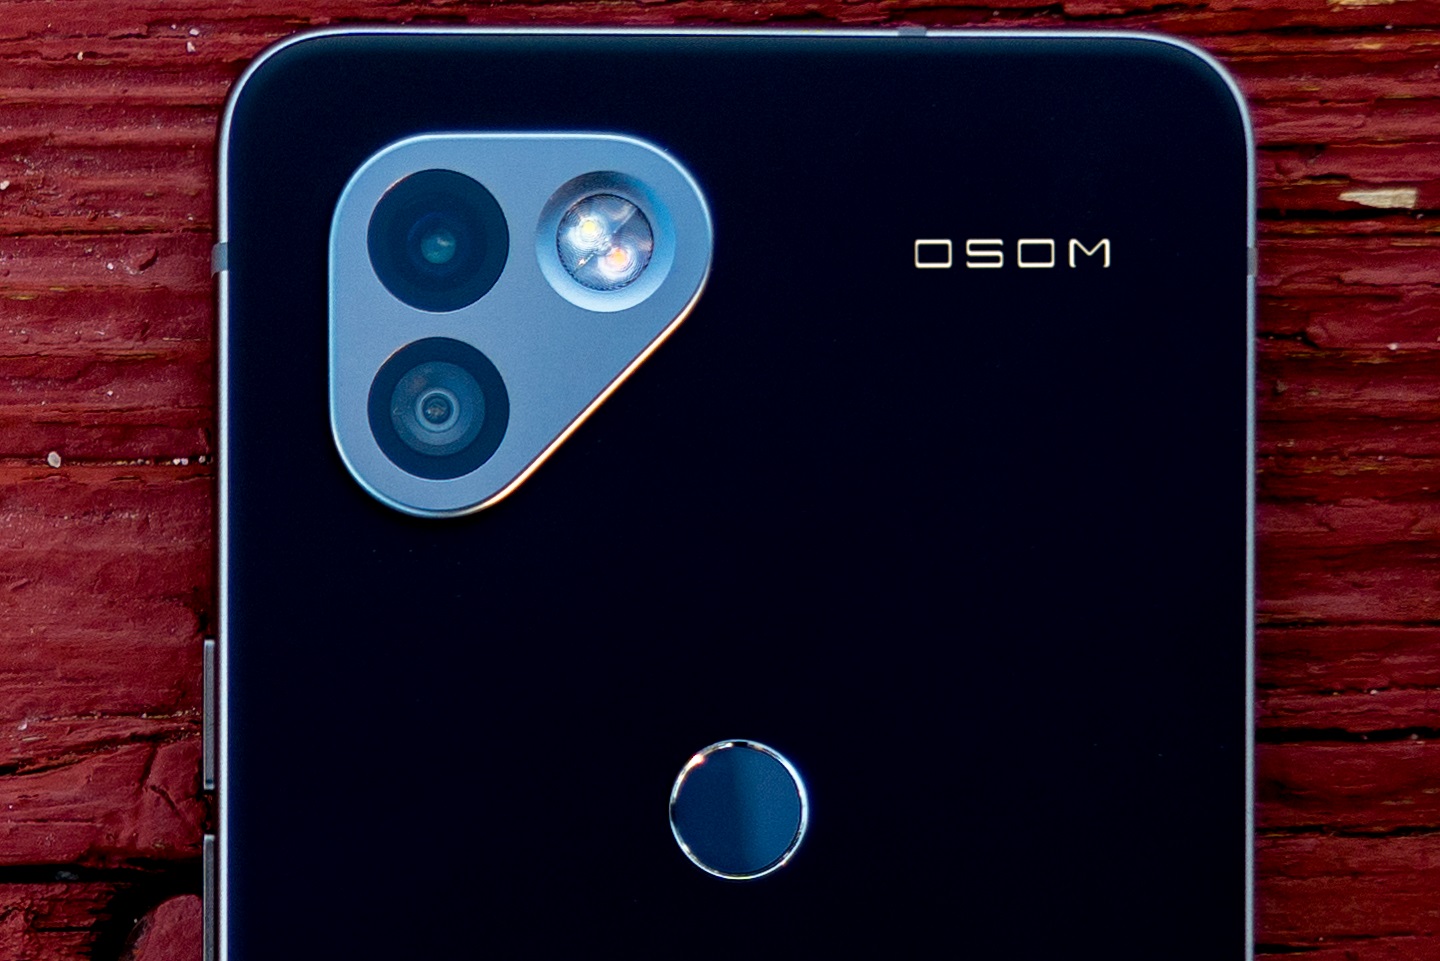 OSOM OV1 è il nuovo smartphone degli ex sviluppatori di Essential Phone con un focus sulla privacy